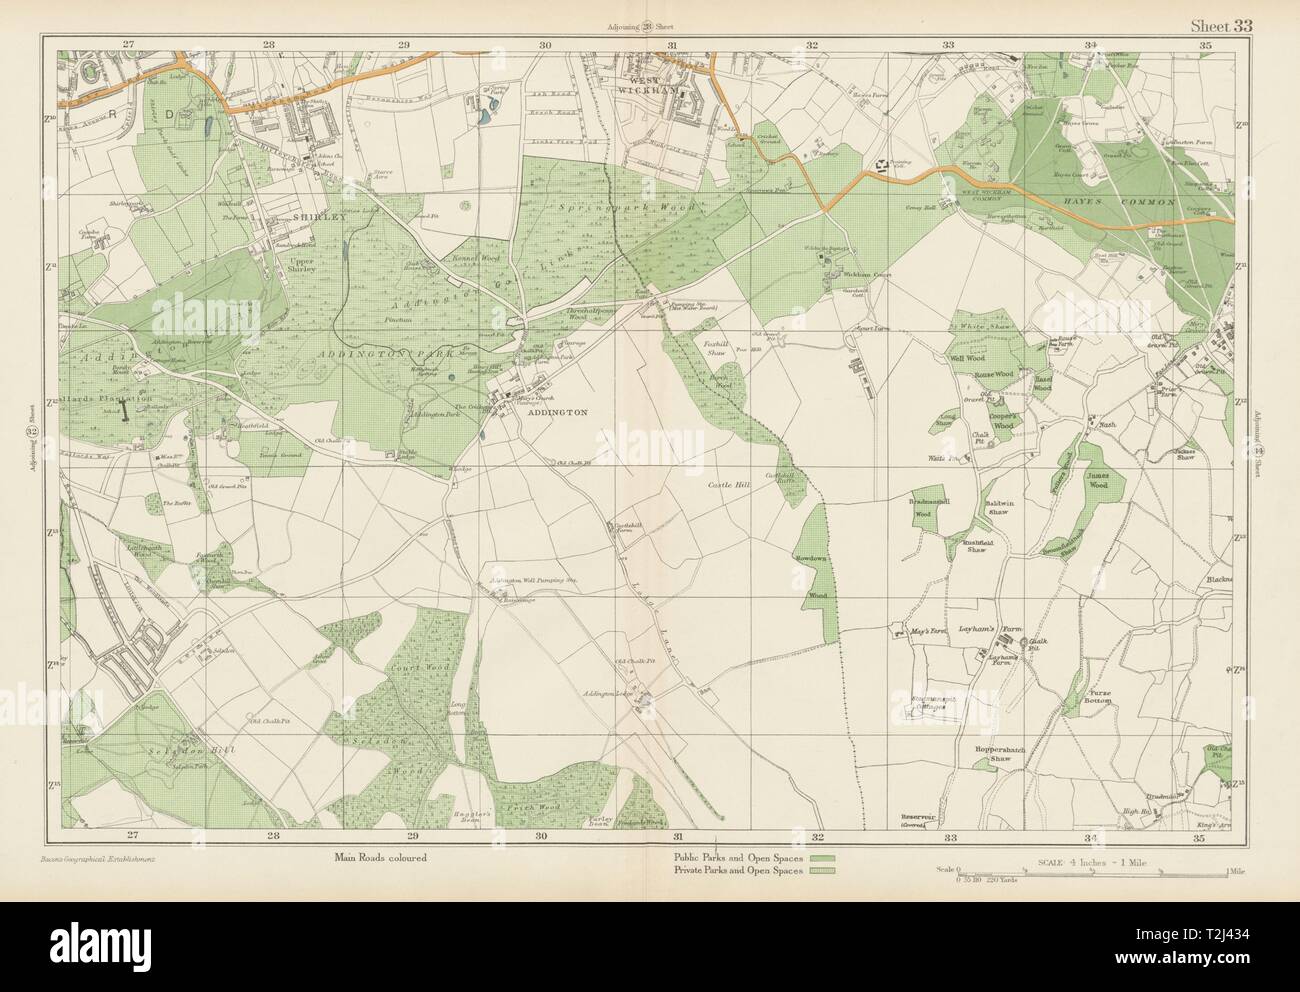 EAST CROYDON Selsdon West Wickham New Addington Hayes Shirley. BACON 1934 map Stock Photo